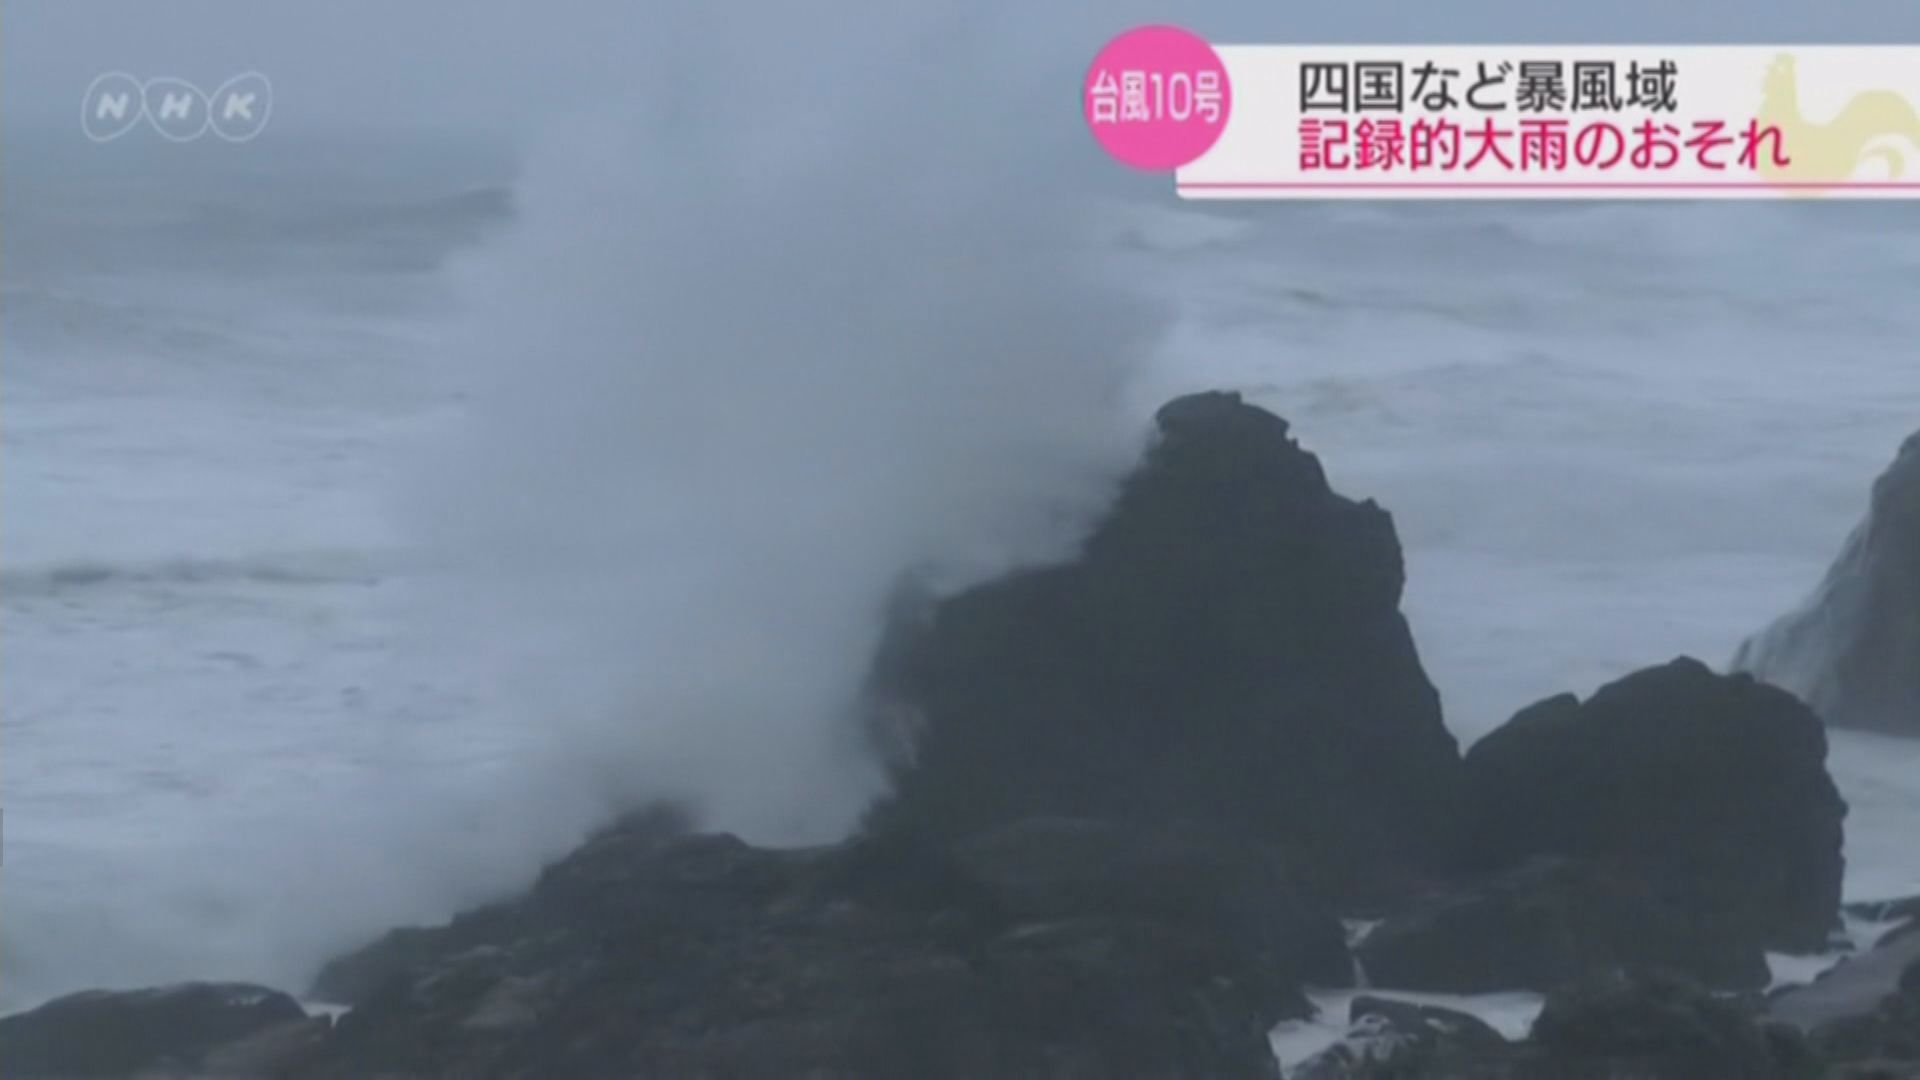 颱風羅莎吹襲西日本料將登陸四國